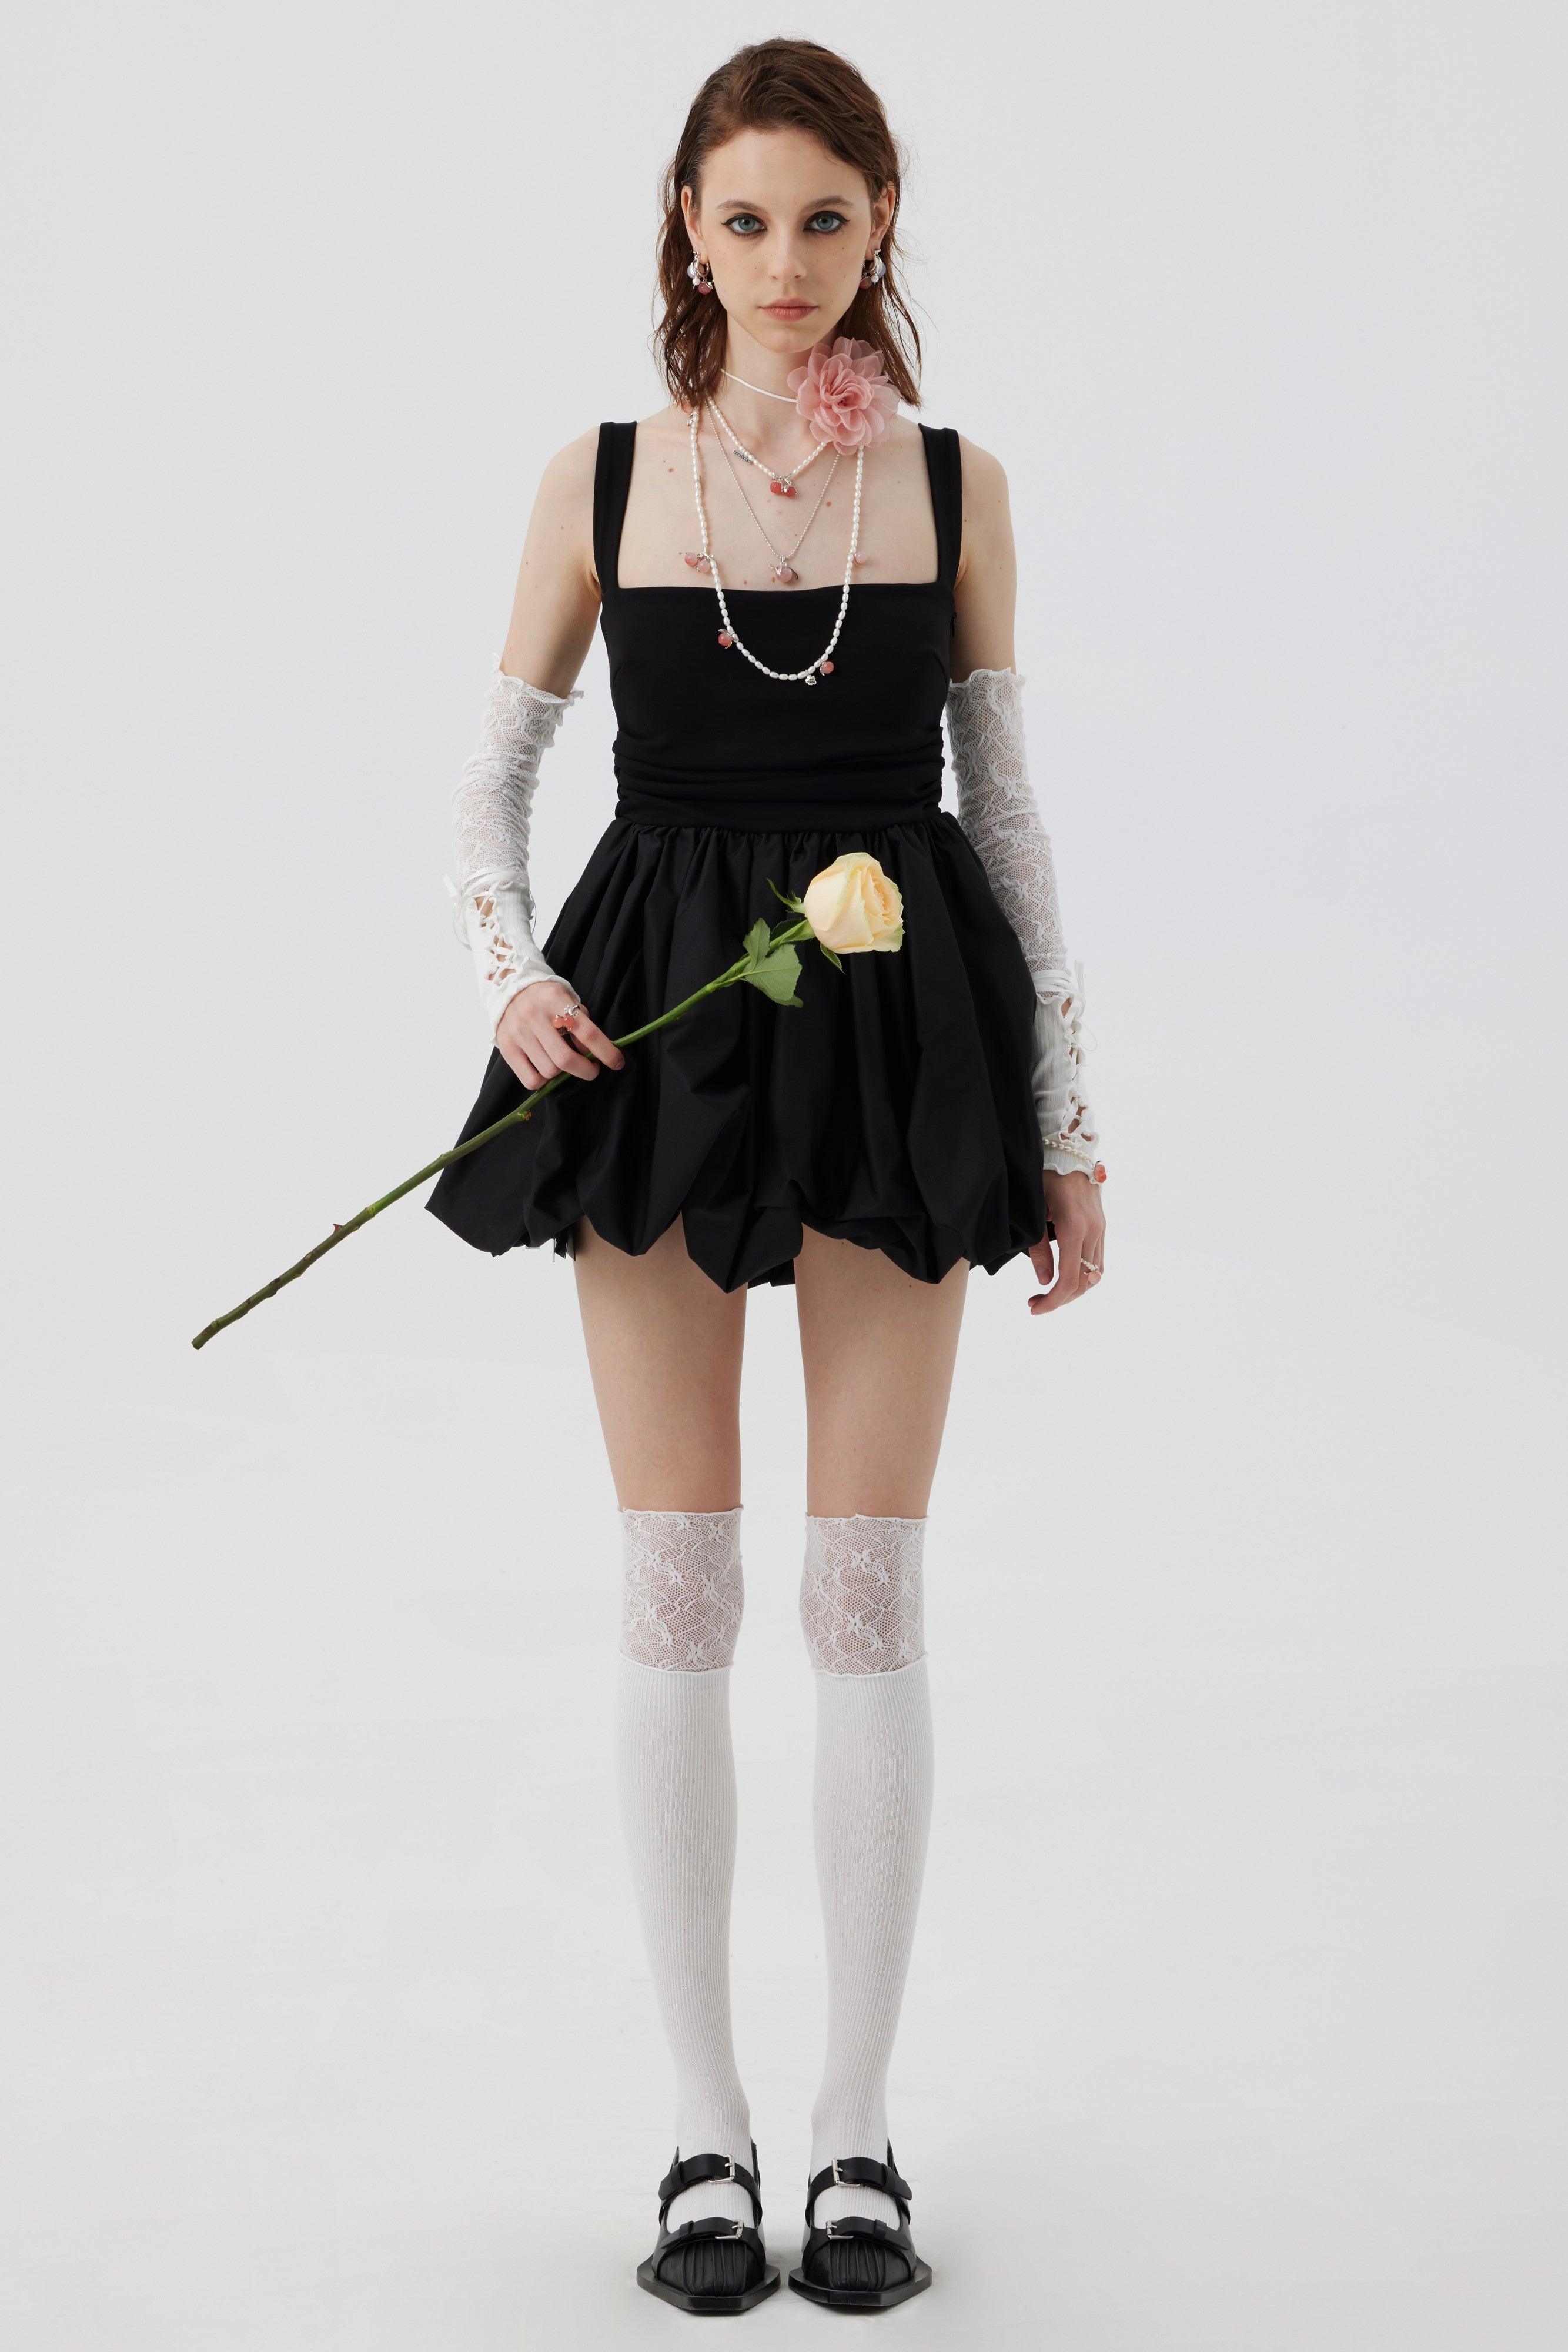 Ballet Bandages Lace Cotton Patchwork Sleeves White/Black - Uniqvibe